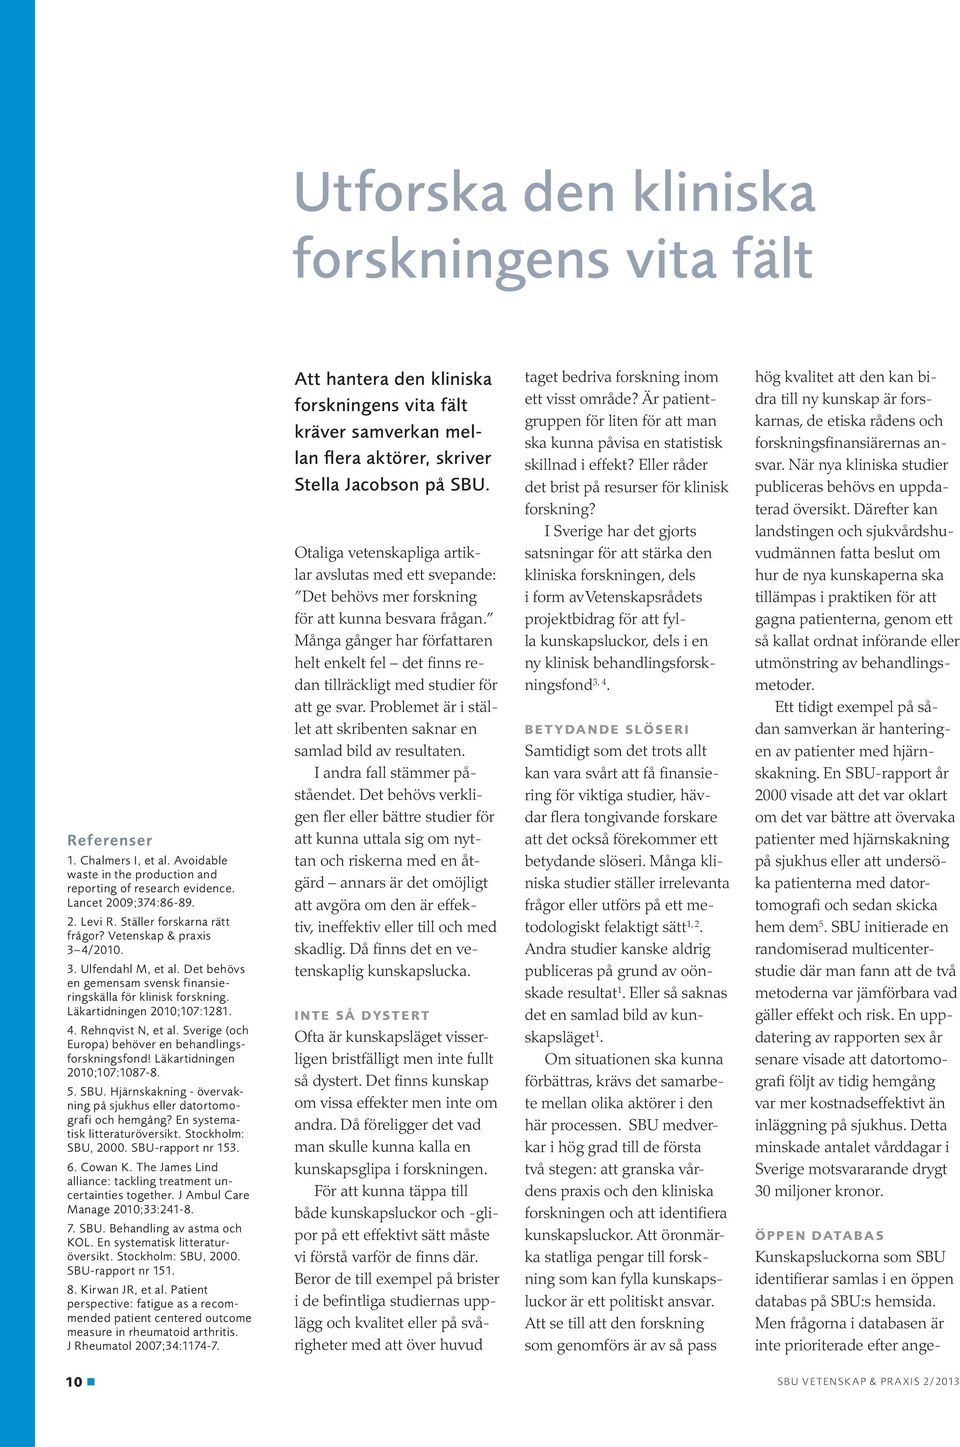 Sverige (och Europa) behöver en behandlingsforskningsfond! Läkartidningen 2010;107:1087-8. 5. SBU. Hjärnskakning - övervakning på sjukhus eller datortomografi och hemgång?